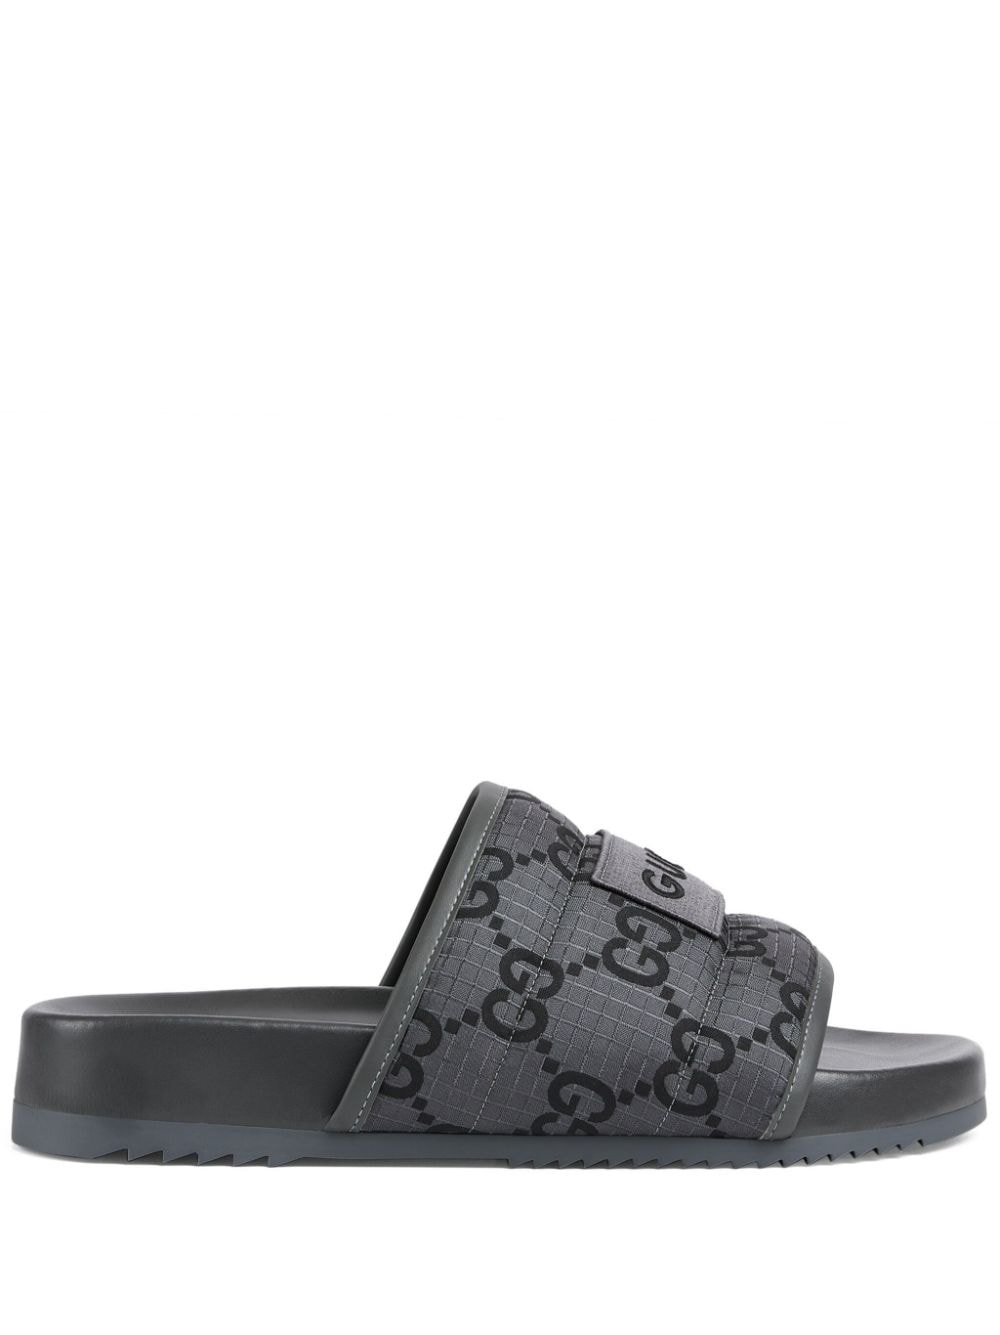 Gucci Damier gewatteerde slippers - Grijs